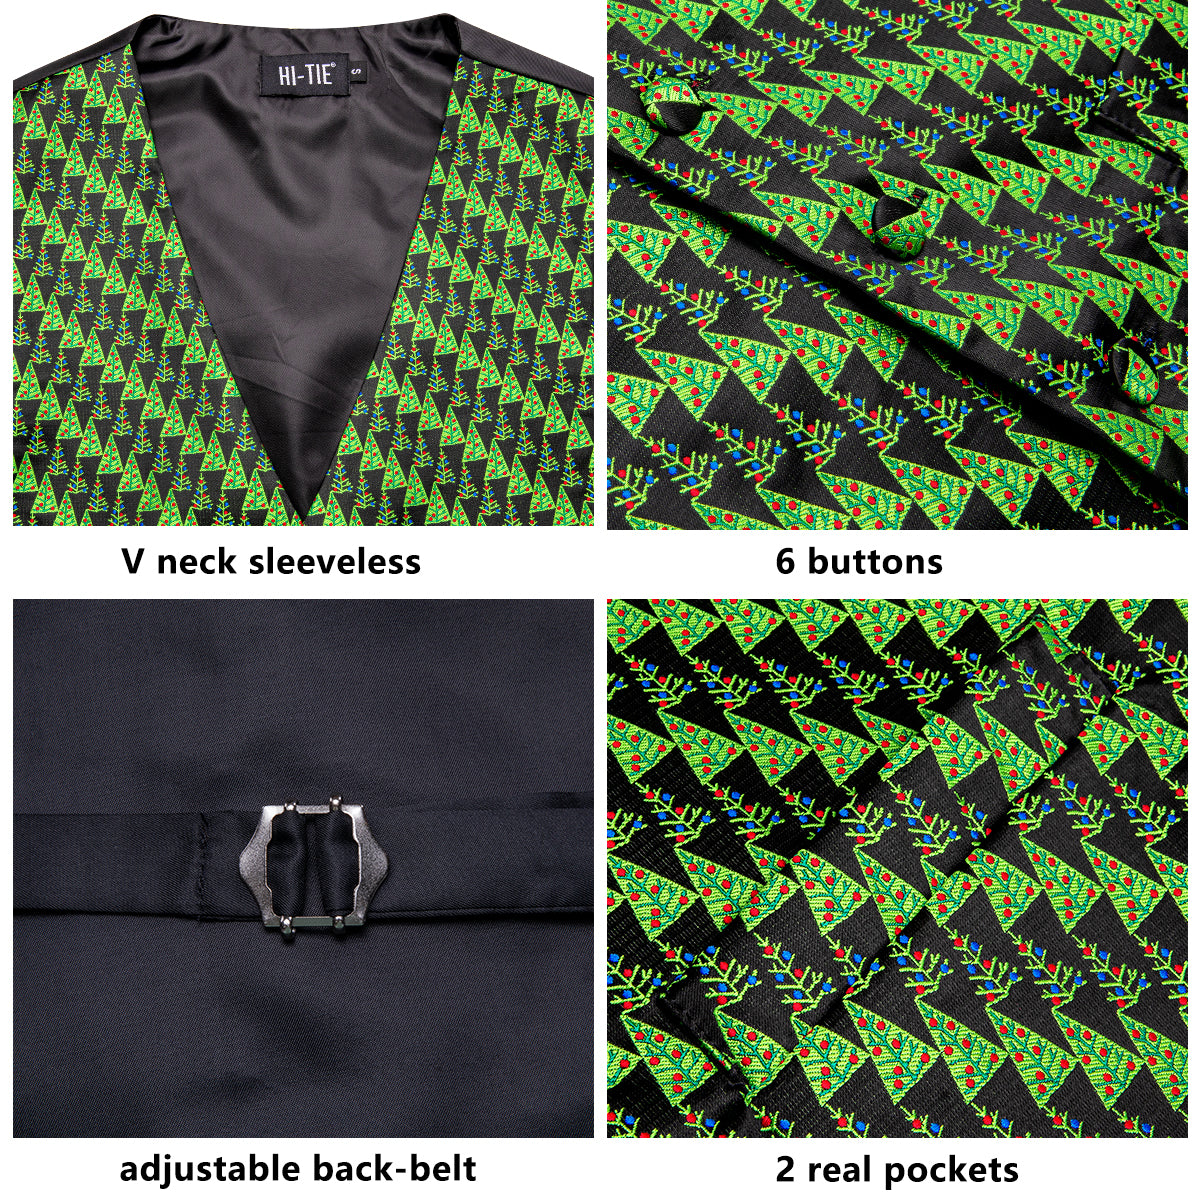 Green Christmas Tree Men's Vest Hanky Cufflinks Tie Set